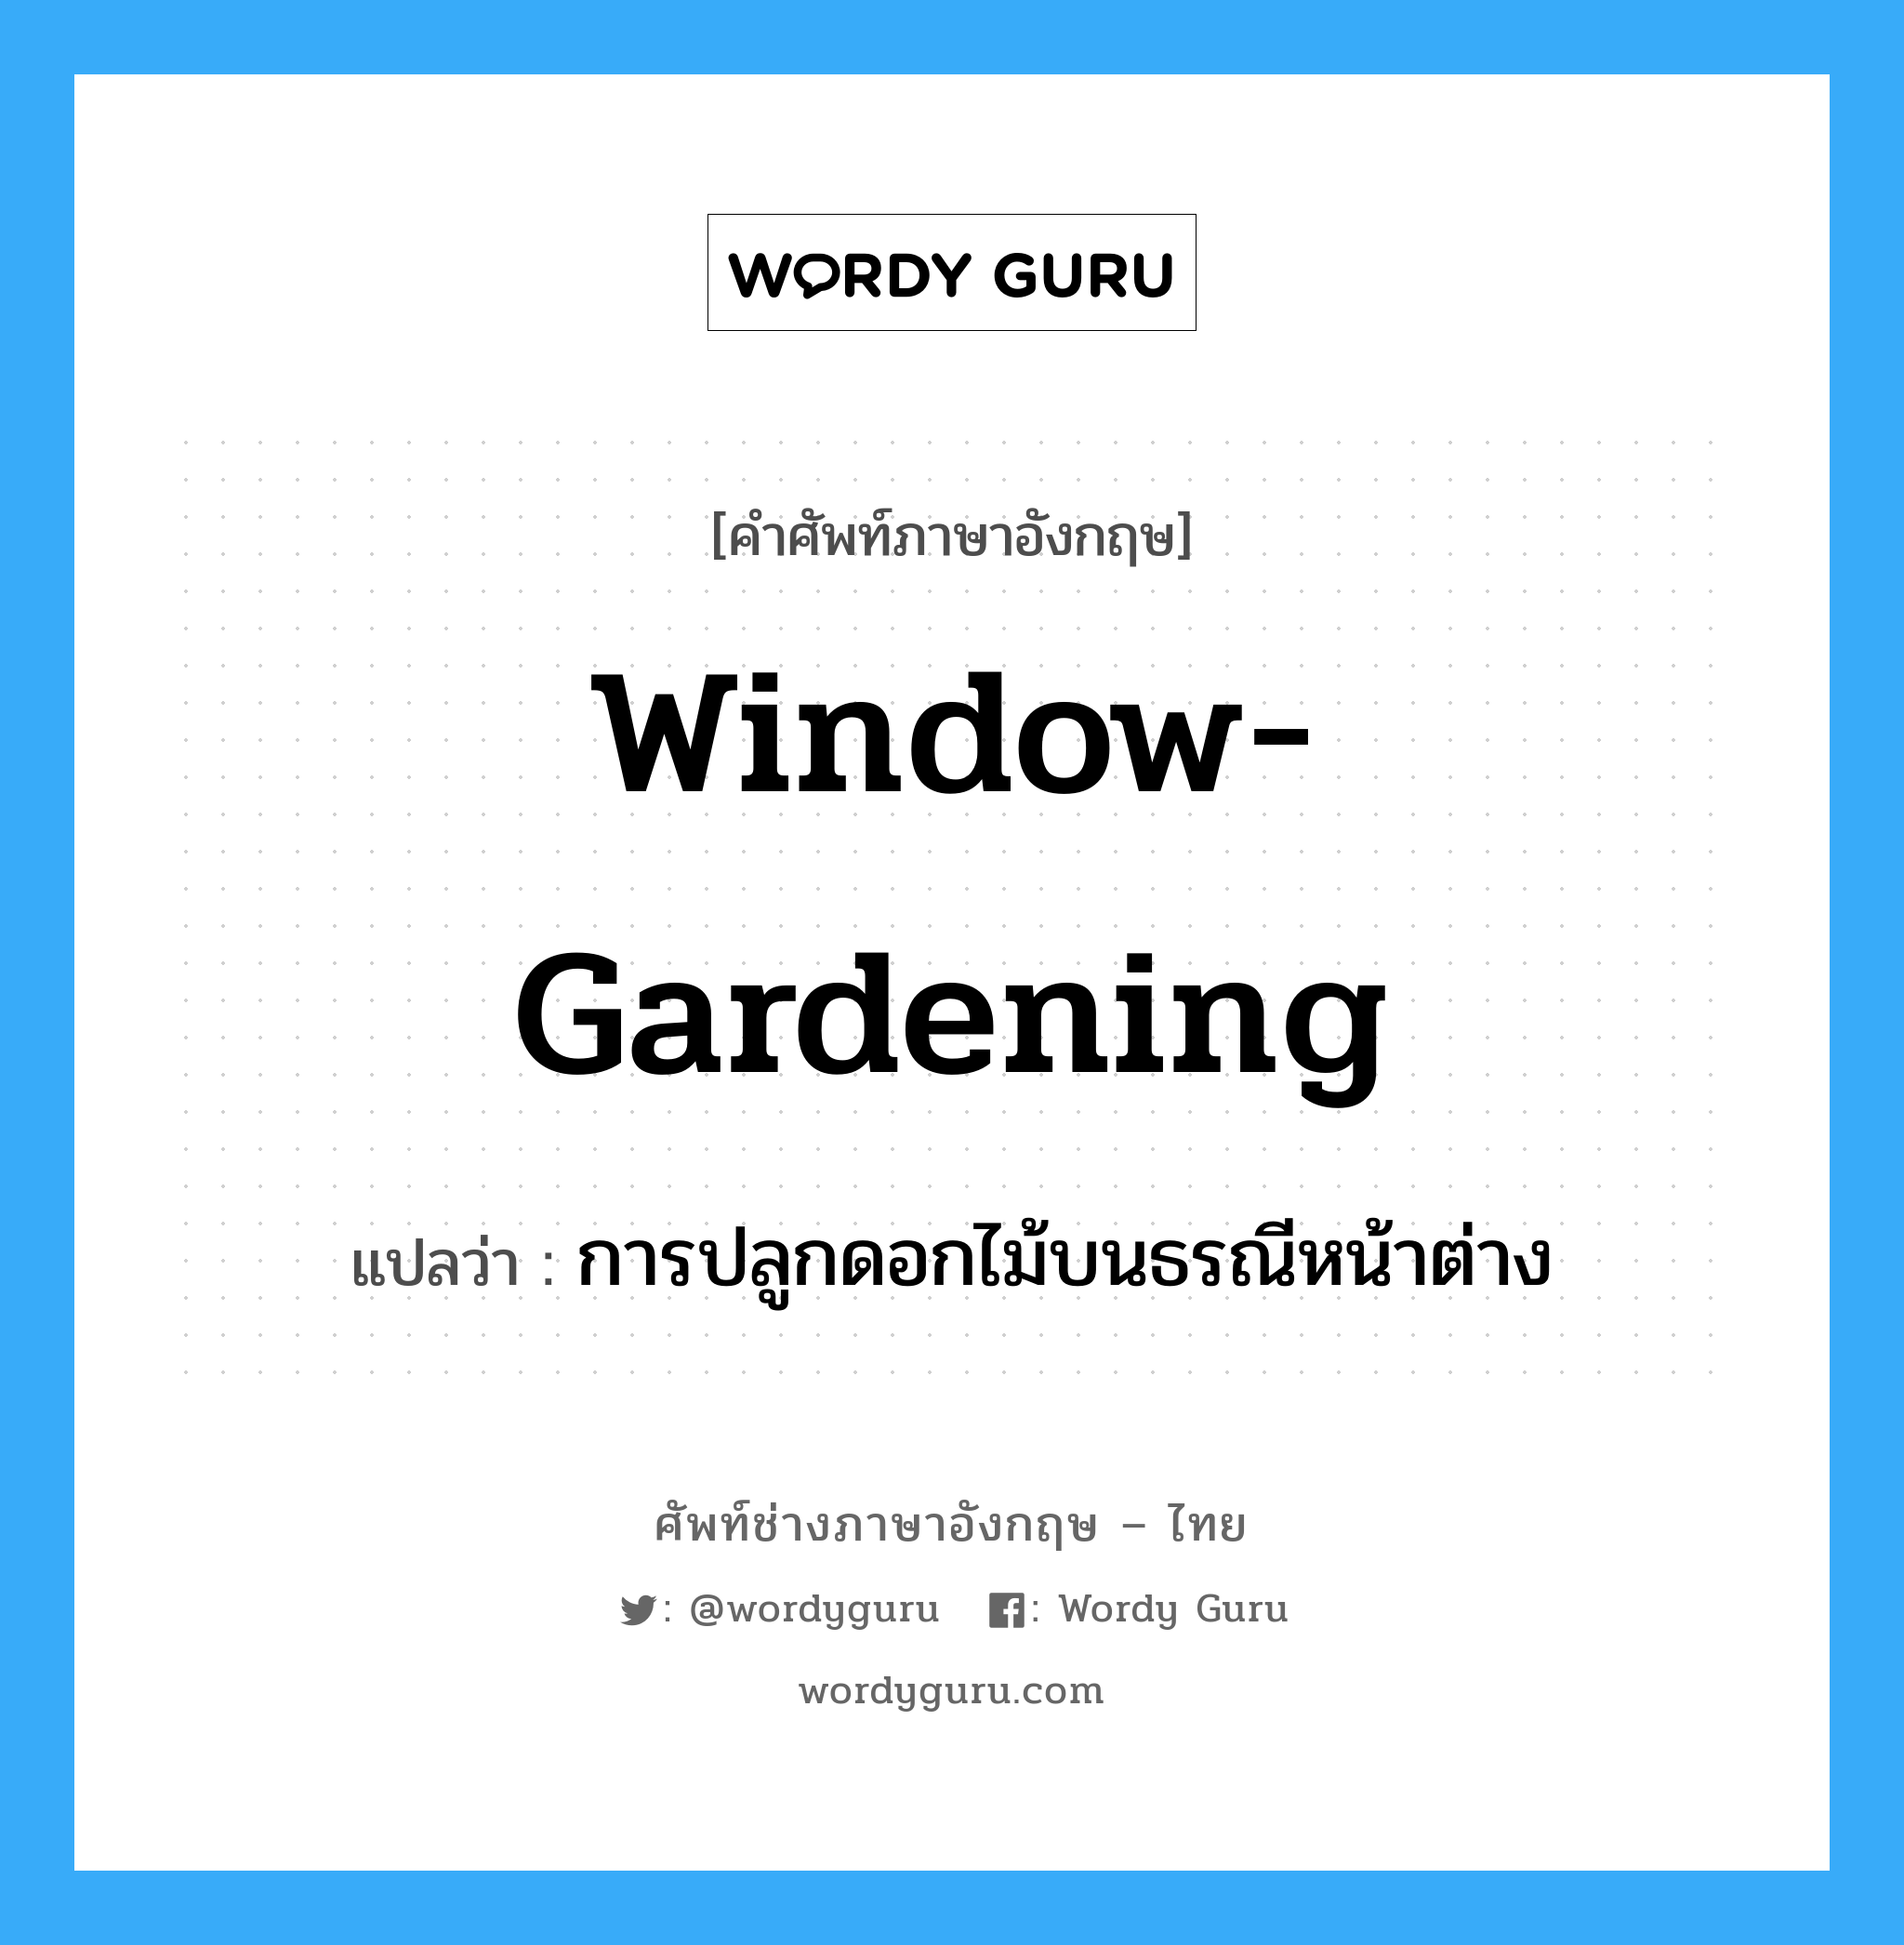 การปลูกดอกไม้บนธรณีหน้าต่าง ภาษาอังกฤษ?, คำศัพท์ช่างภาษาอังกฤษ - ไทย การปลูกดอกไม้บนธรณีหน้าต่าง คำศัพท์ภาษาอังกฤษ การปลูกดอกไม้บนธรณีหน้าต่าง แปลว่า window-gardening